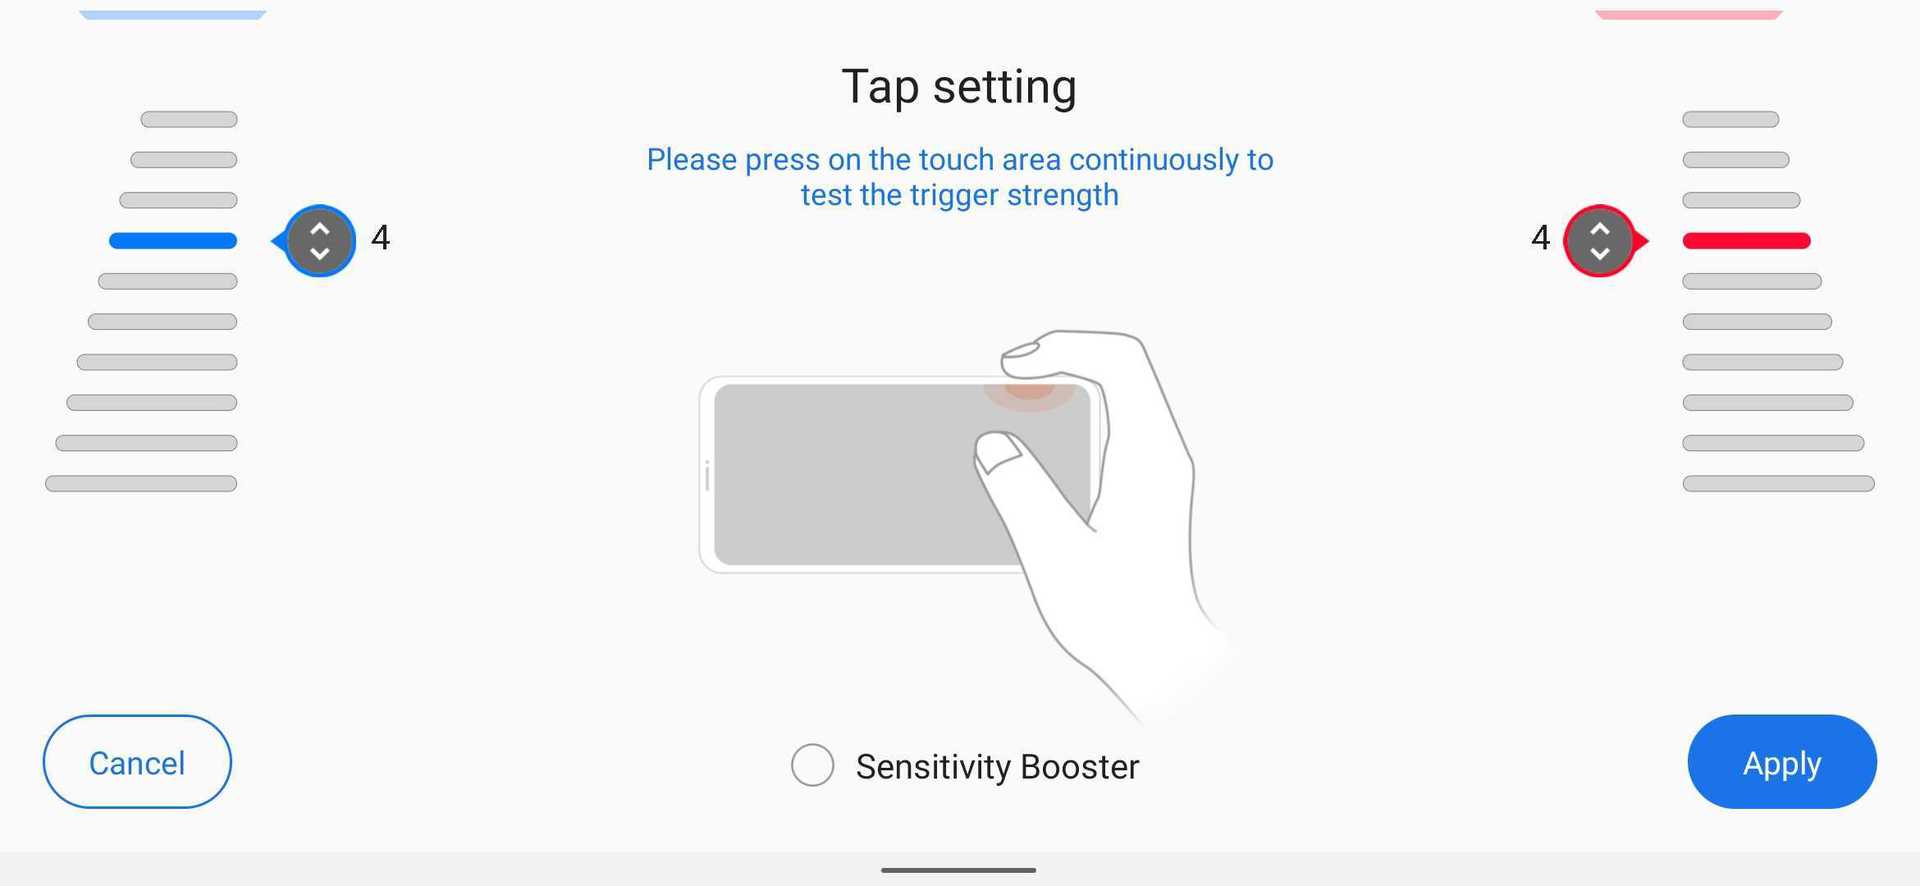 Asus ROG Phone 3 air trigger tap setting